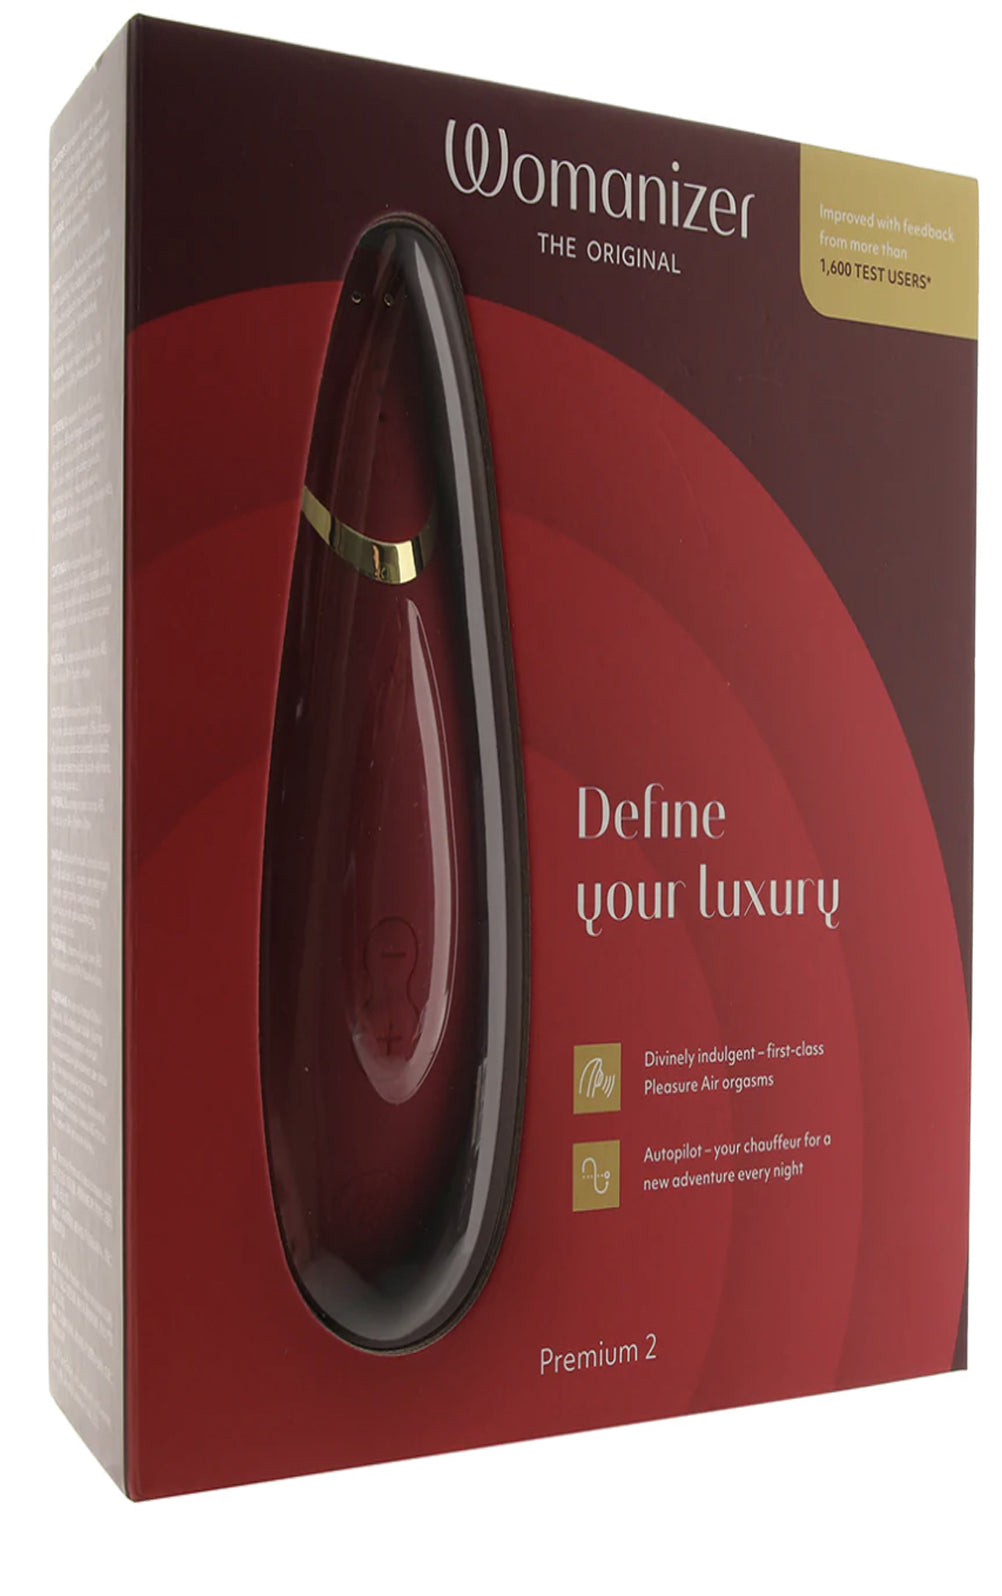 Womanizer Premium, Pleasure Air Stimulator